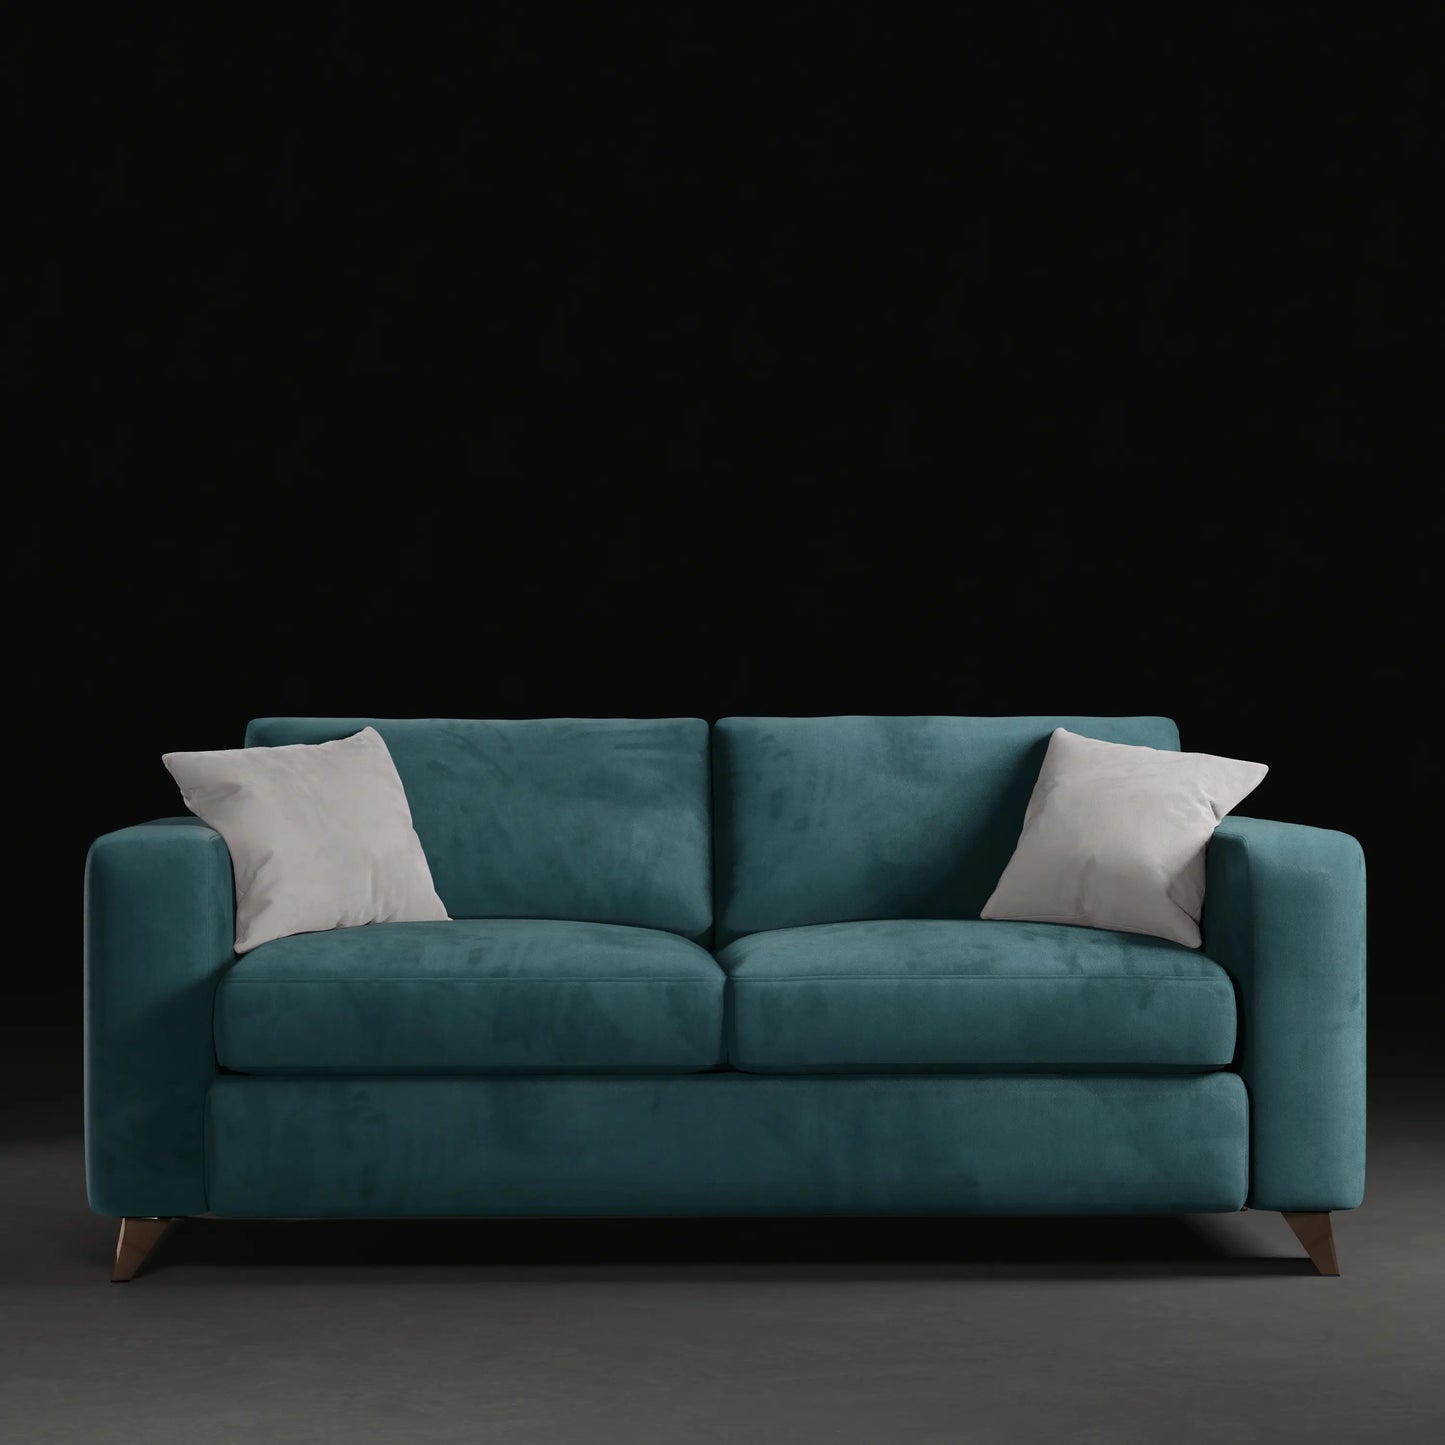 JUNIPER - 2 Seater Couch in Velvet Finish | Teal colour